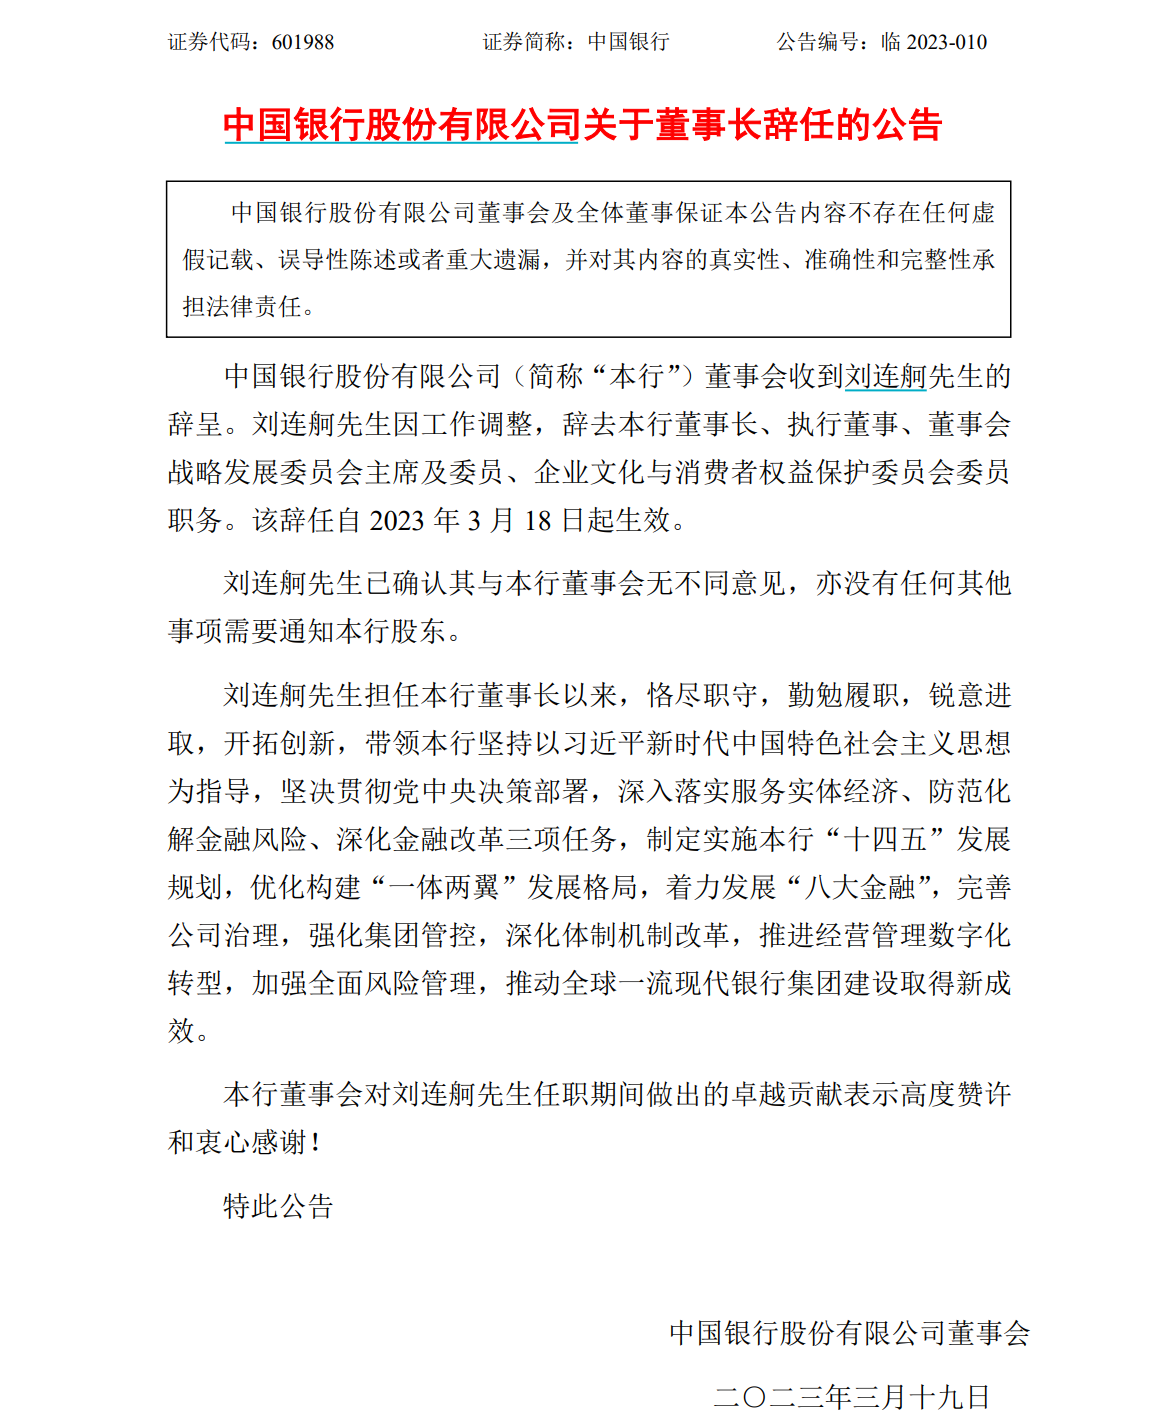 刘连舸因工作调整辞去中国银行董事长等职务